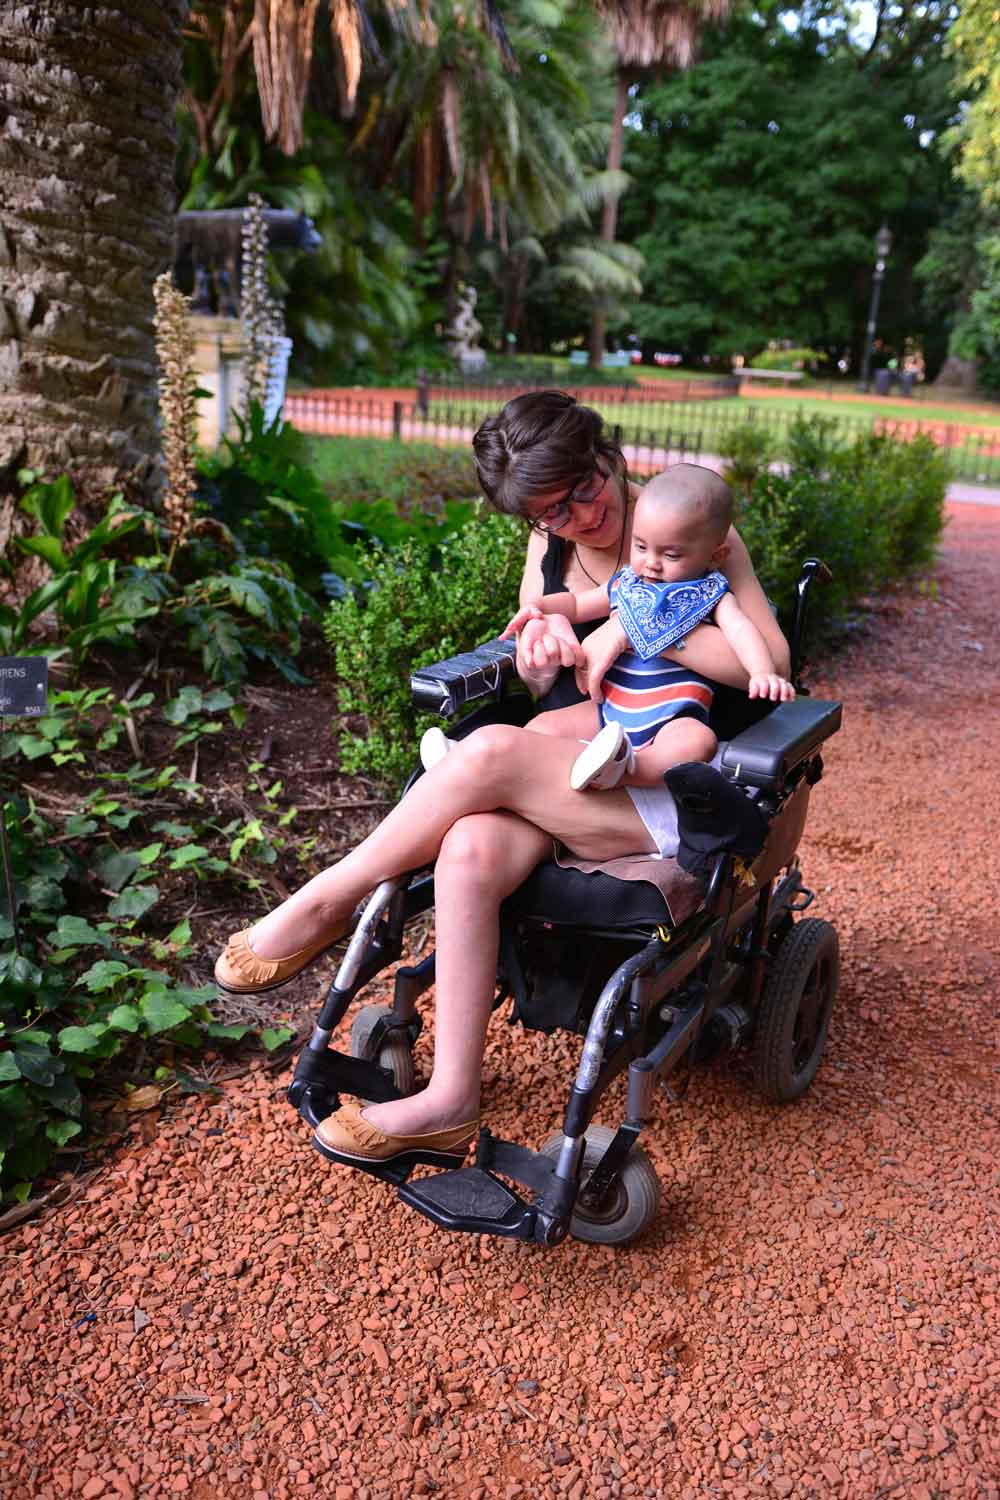 Anabella Mazzini en la silla de ruedas con su bebe en brazos.